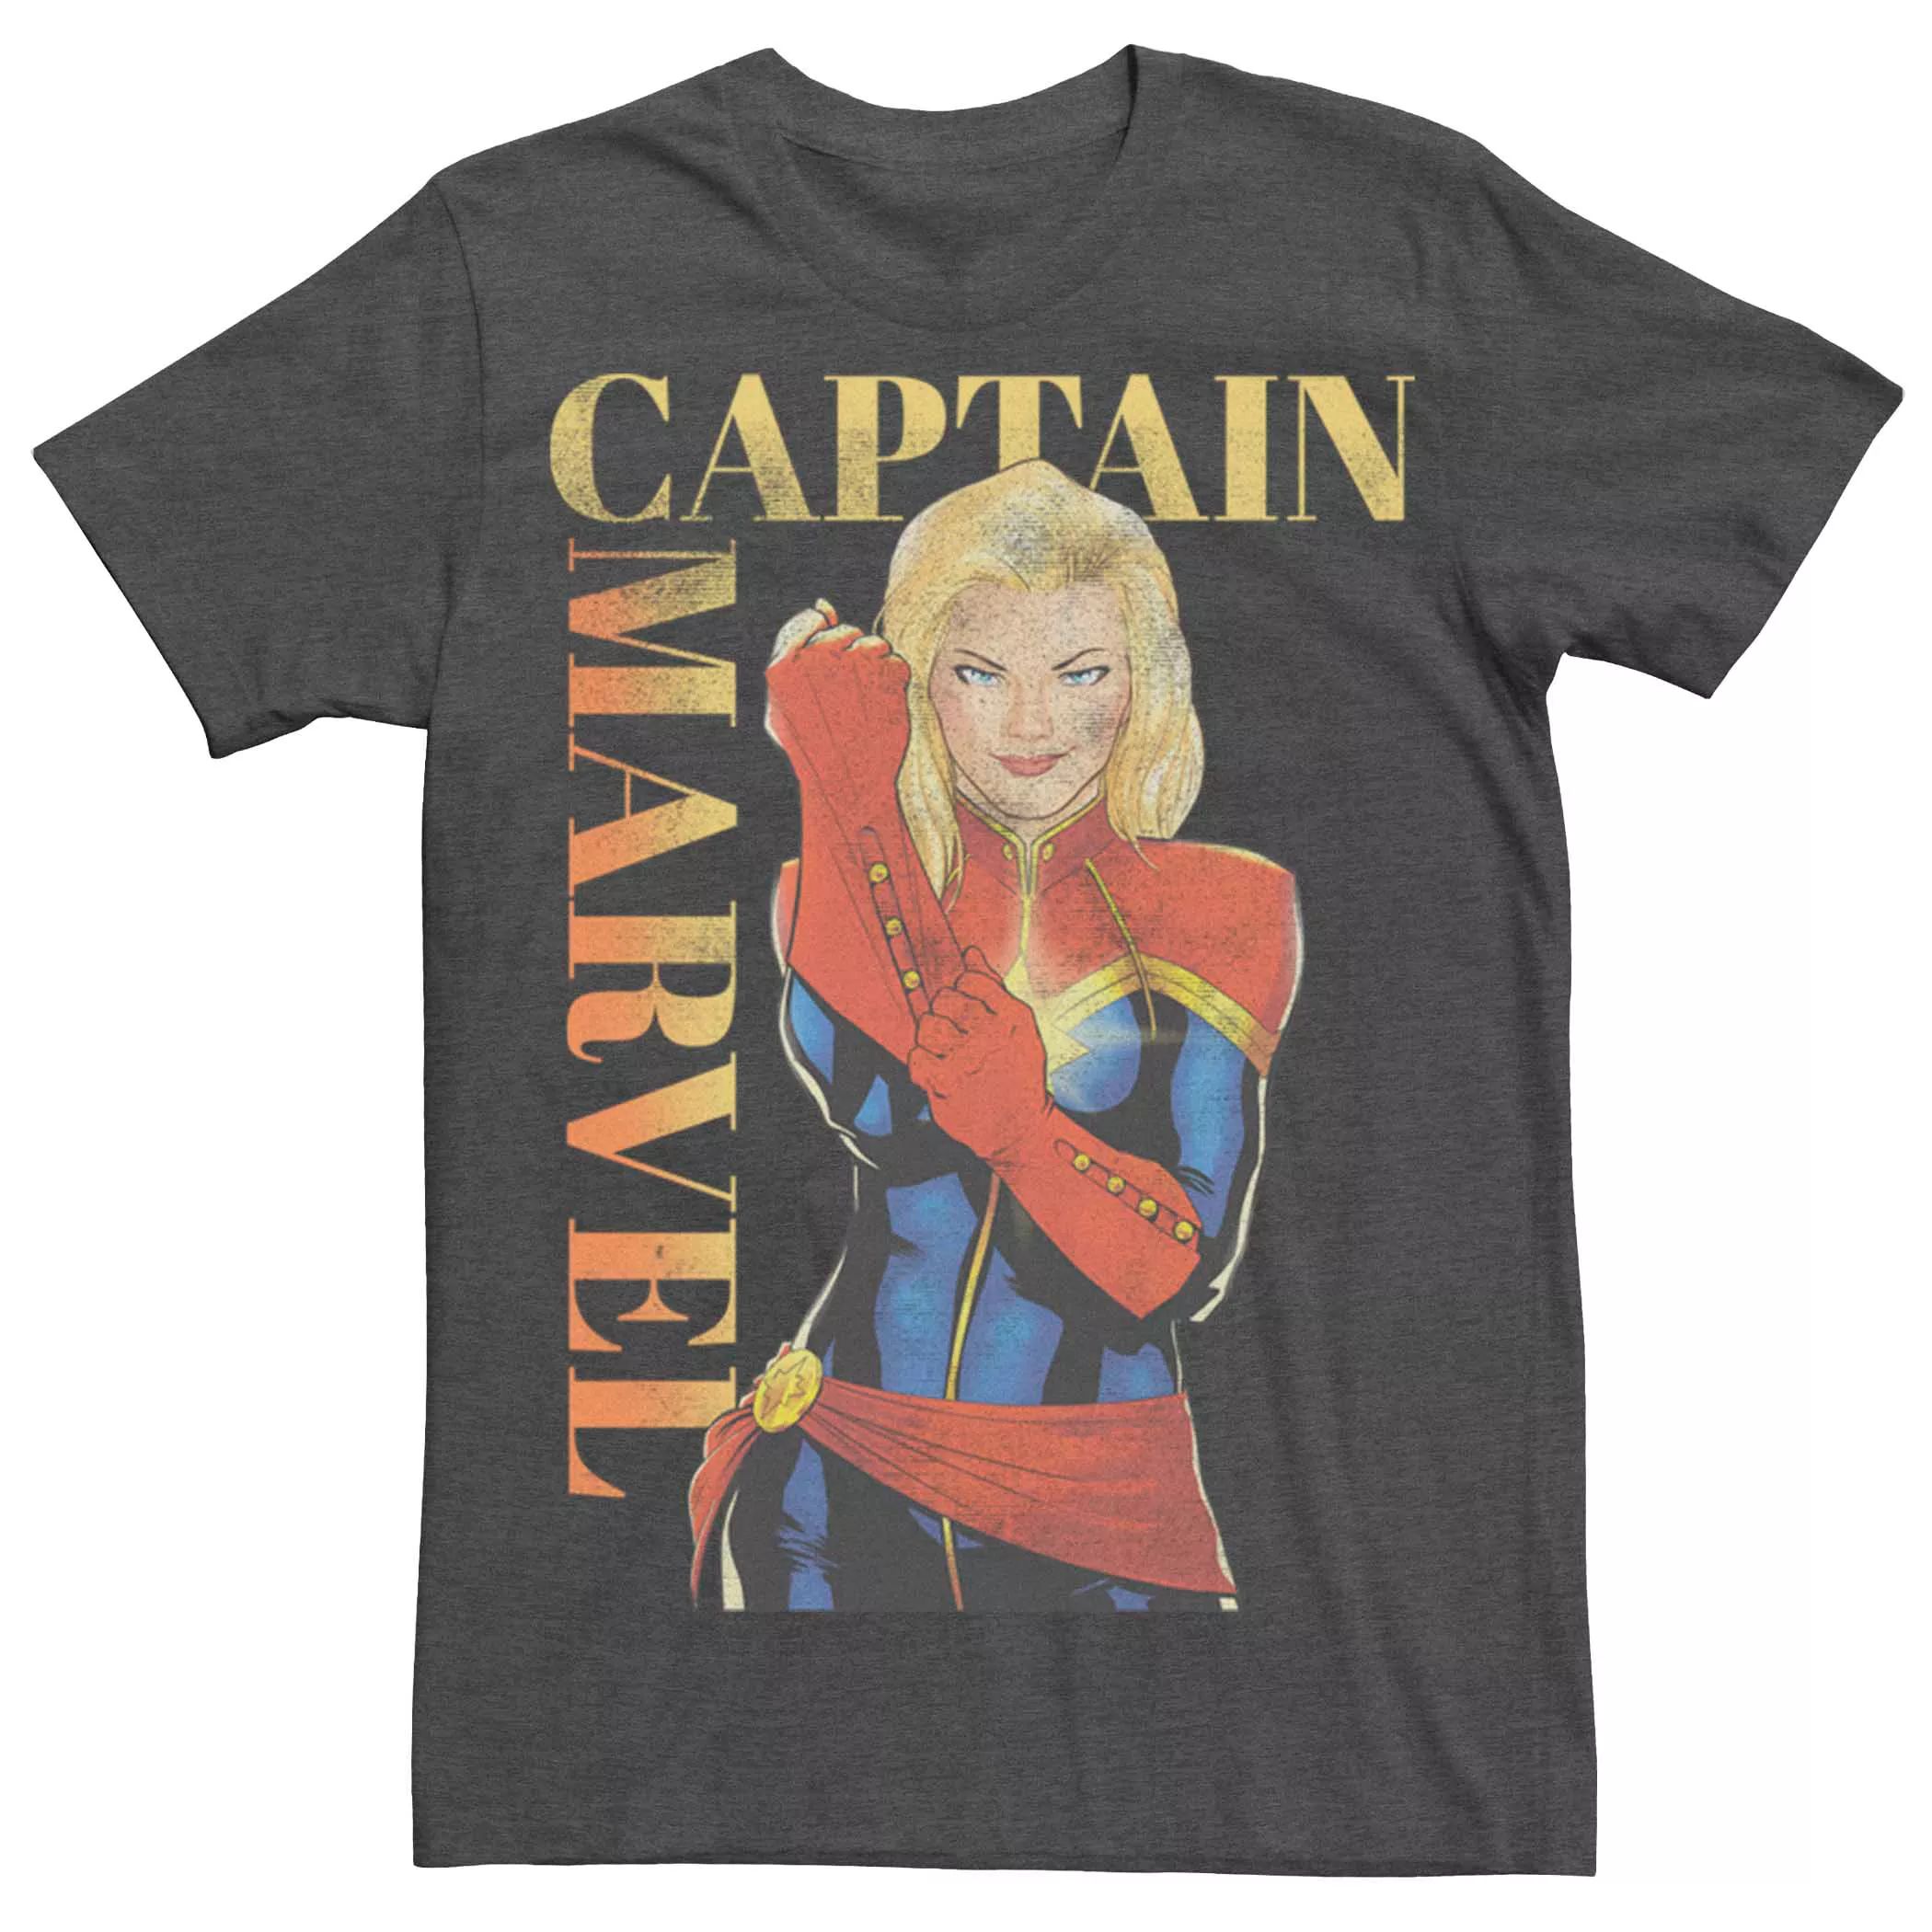 Мужская винтажная футболка с плакатом в костюме Капитана Марвела Licensed Character